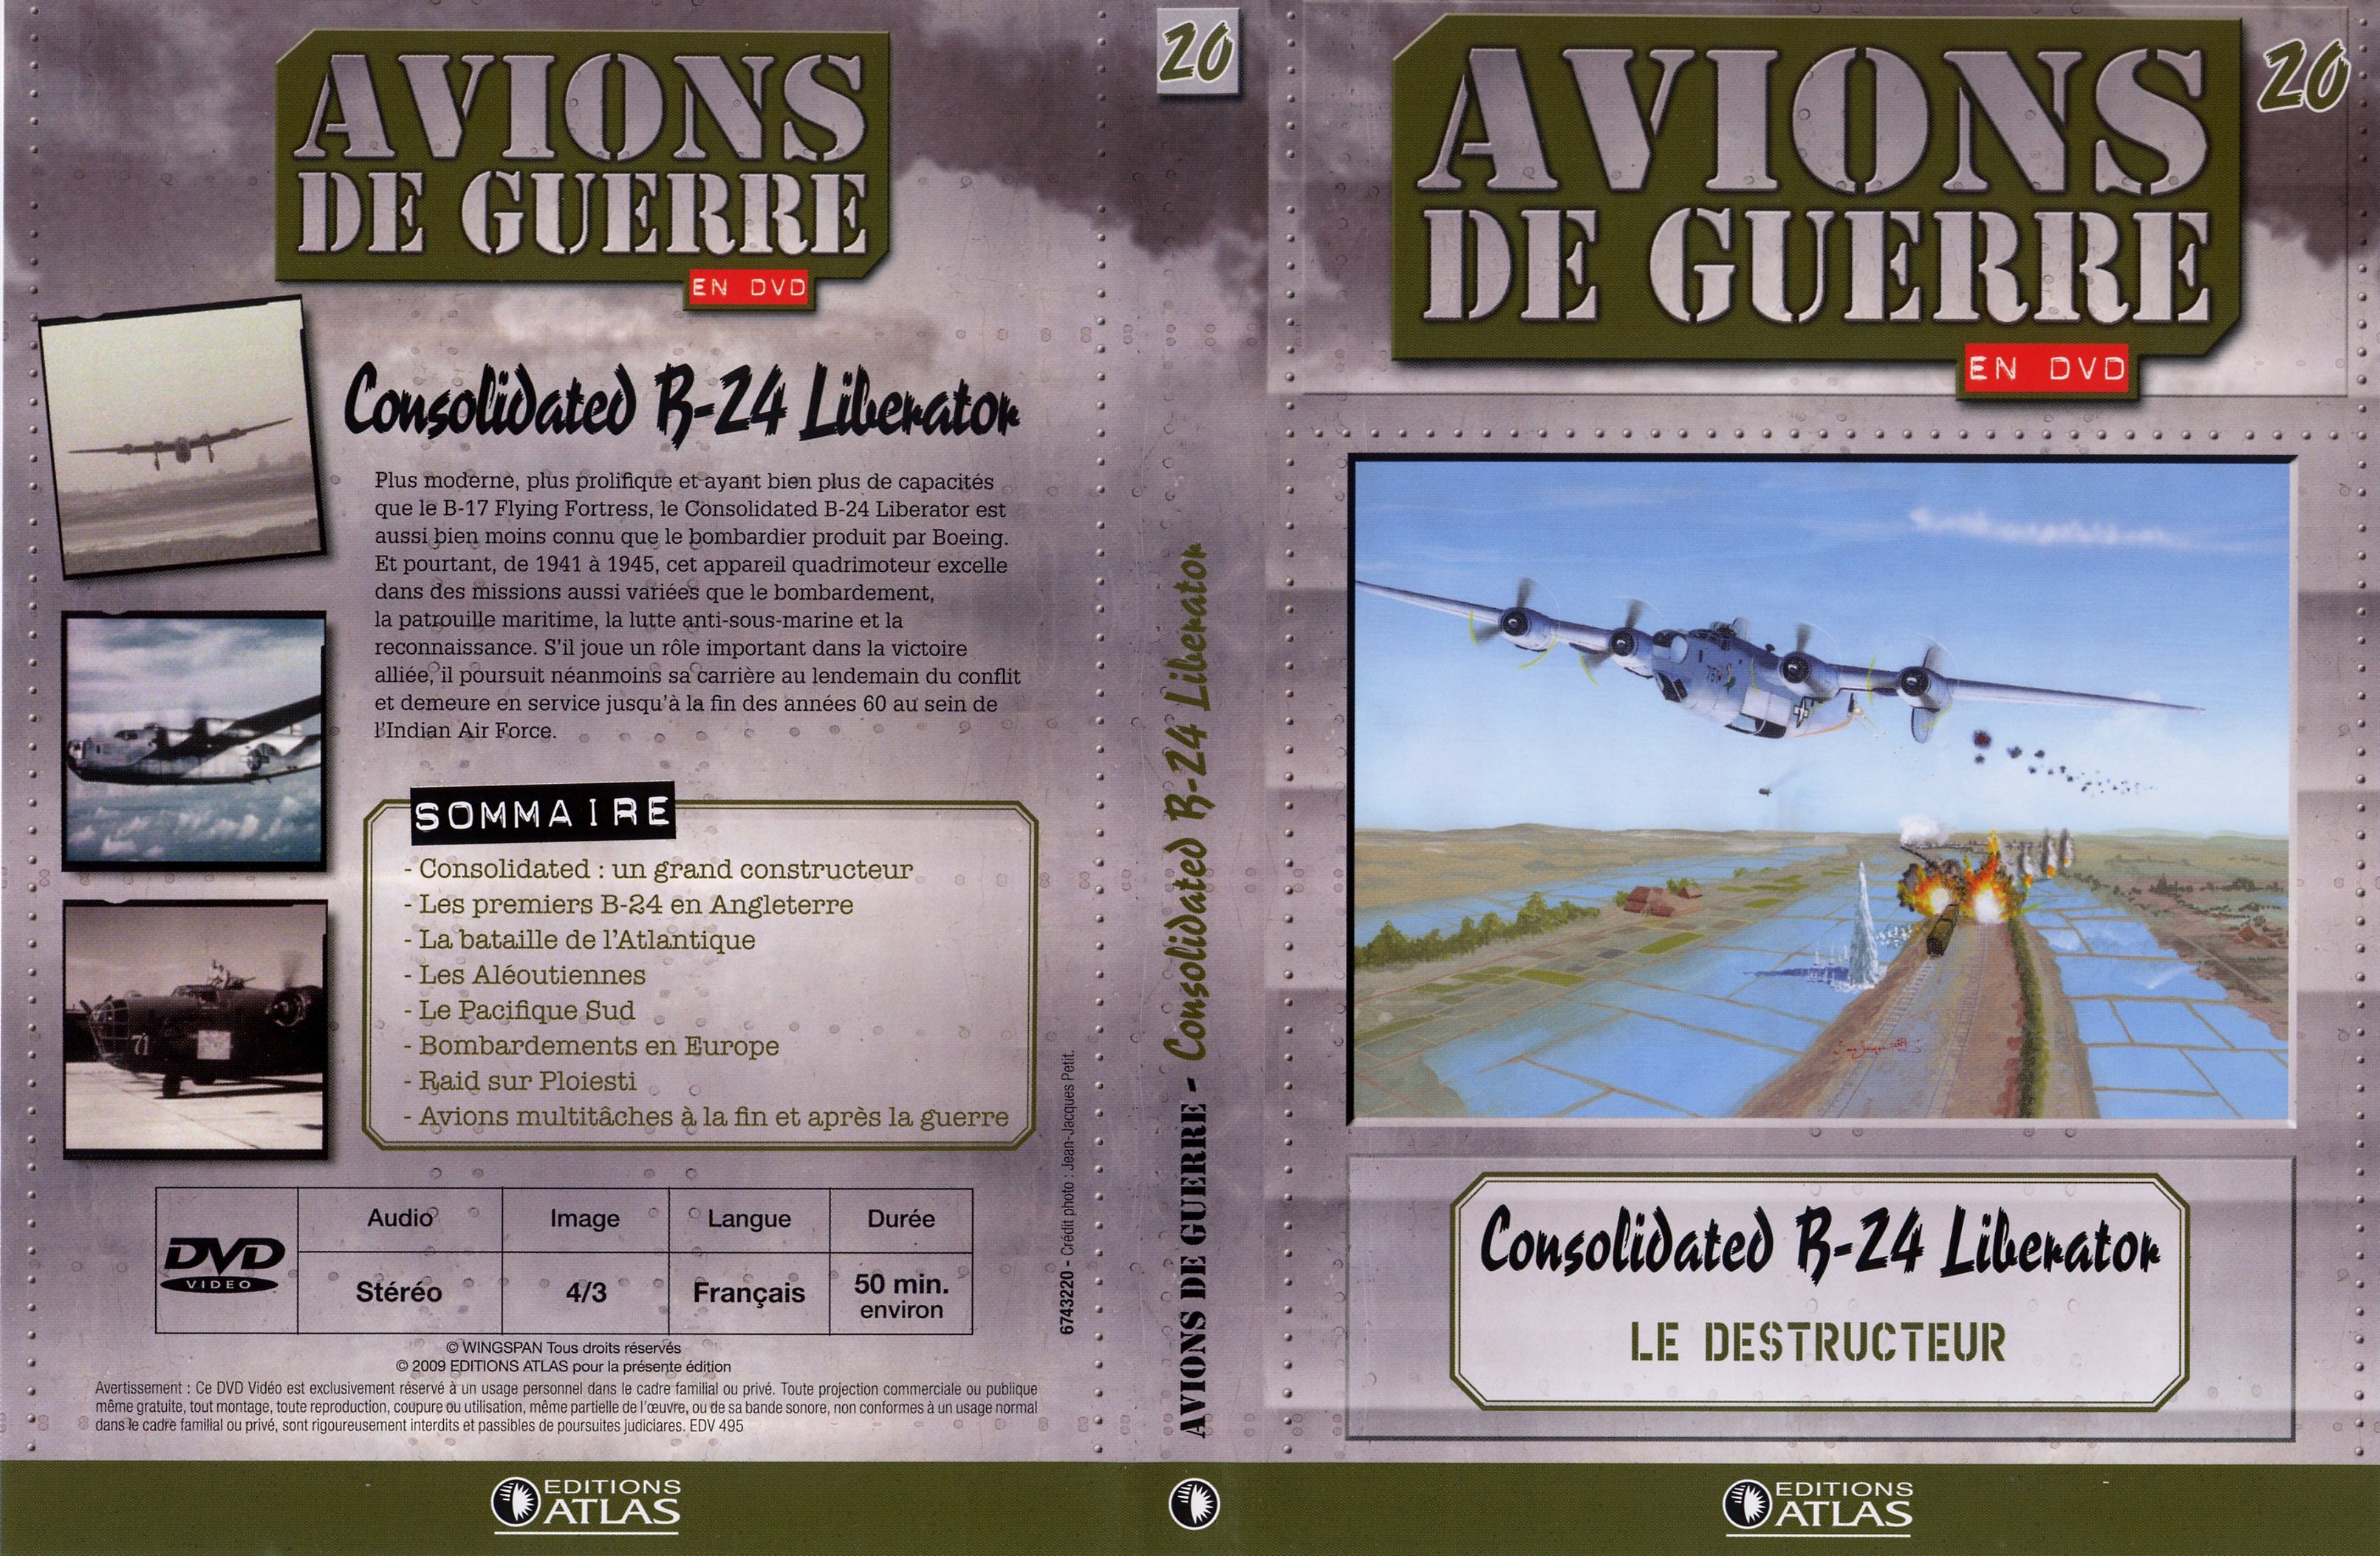 Jaquette DVD Avions de guerre en DVD vol 20